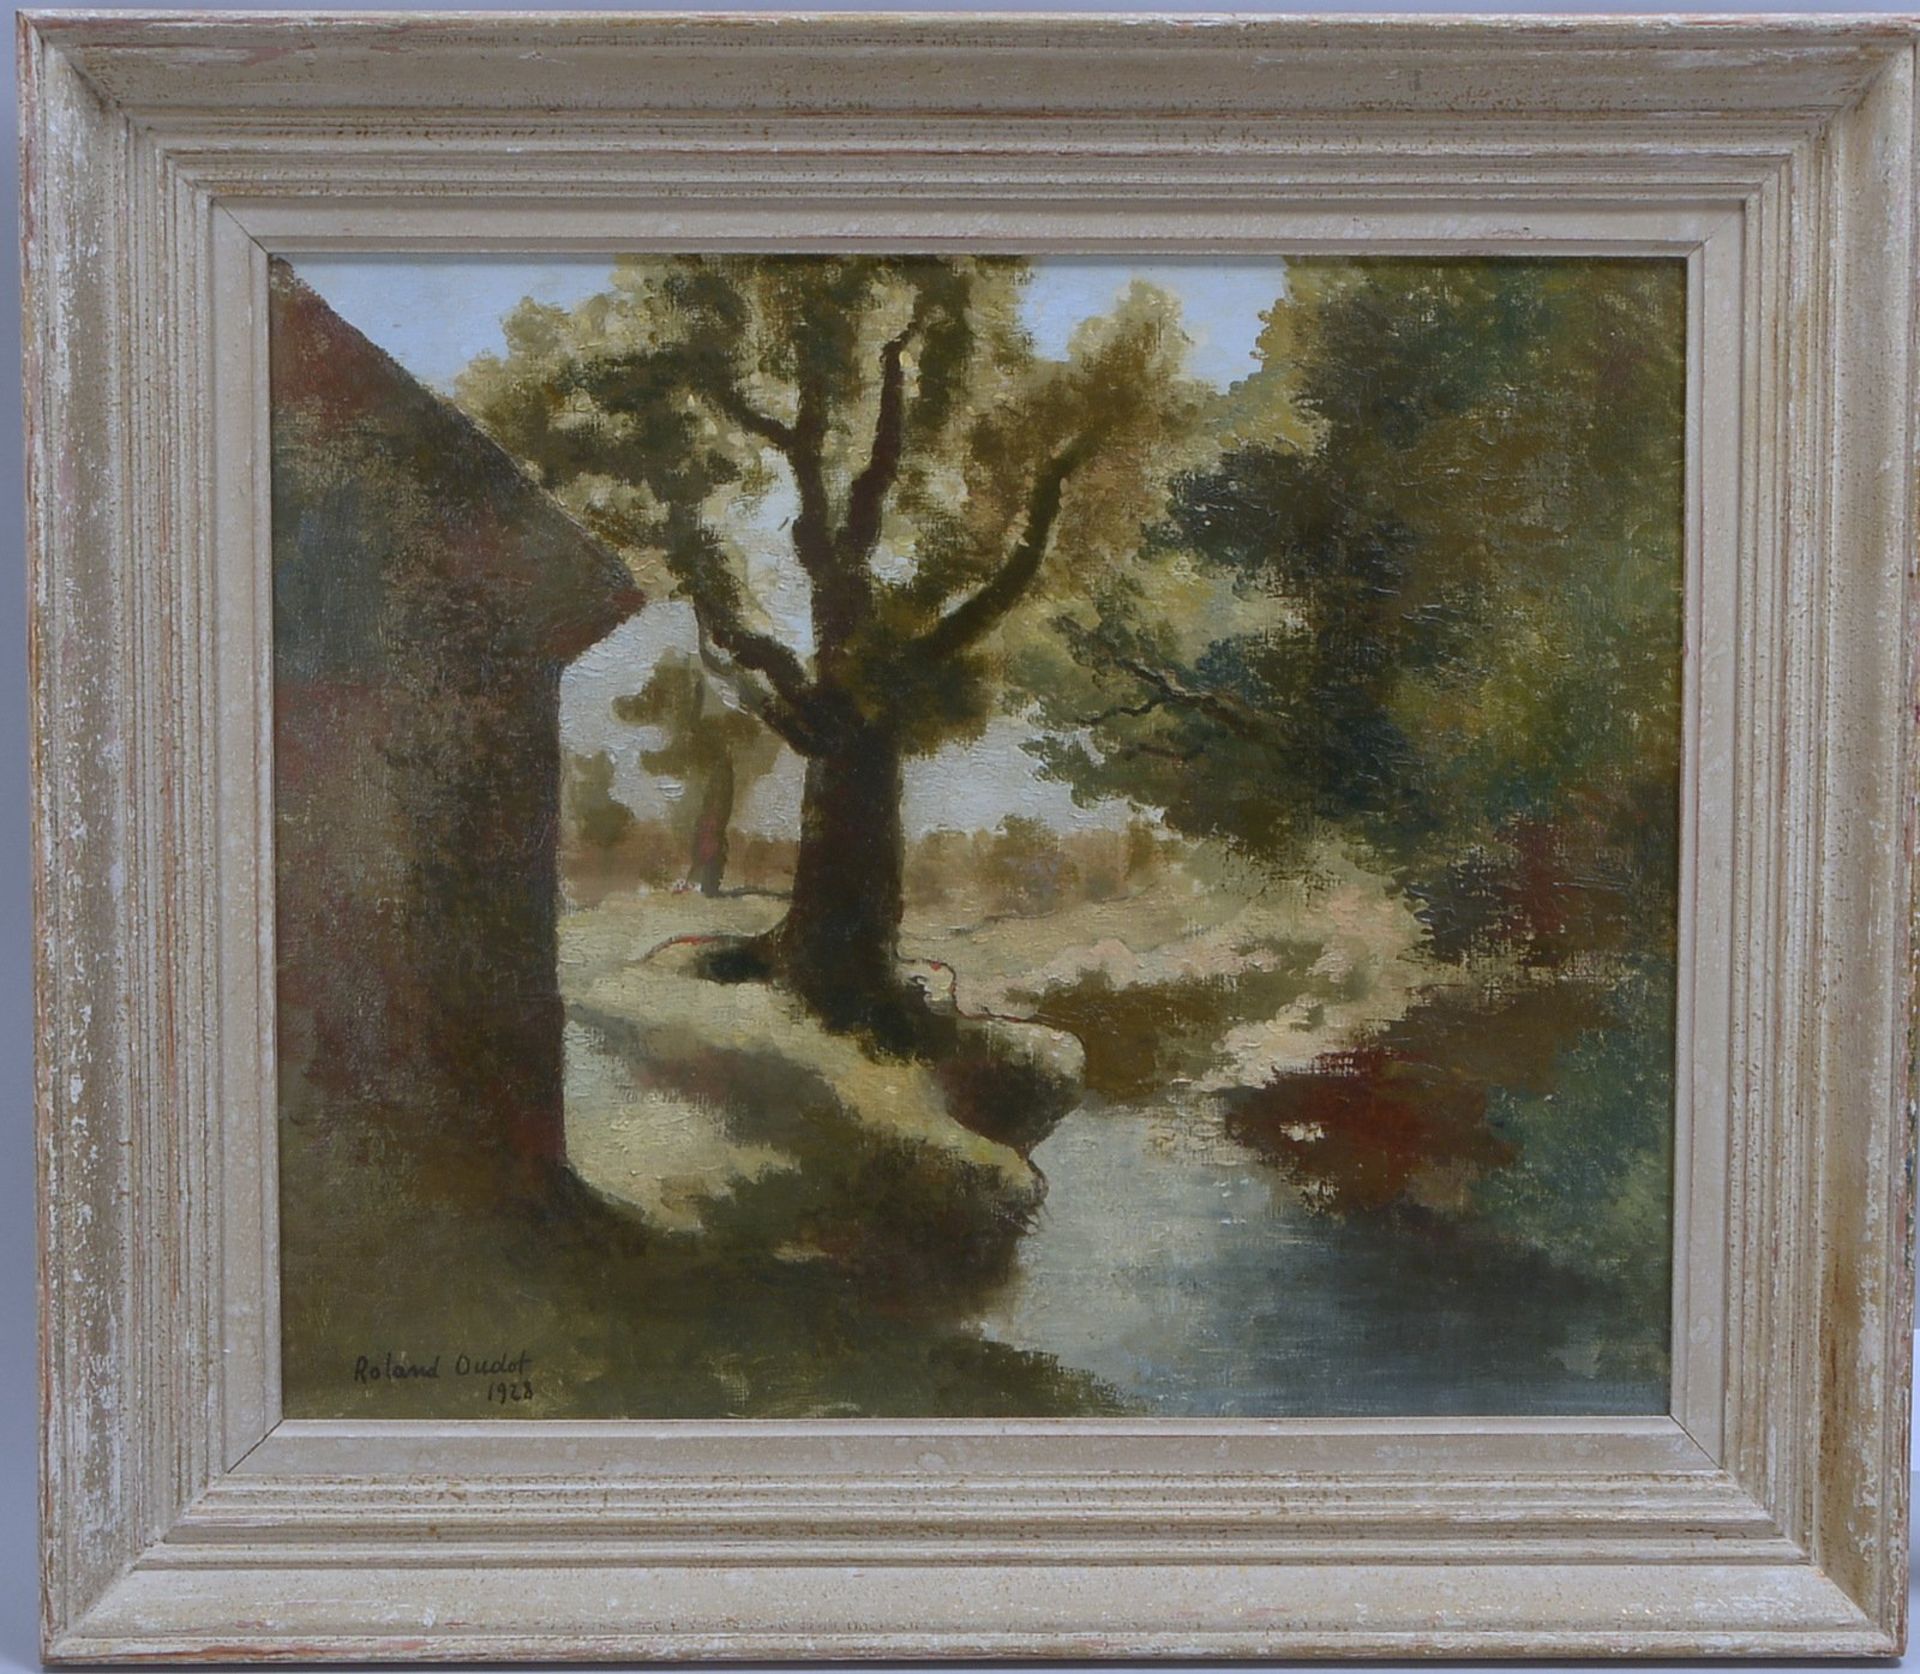 Oudot, Roland, 'Baum am Teich', Öl/Lw, unten li. sign./dat. '1928'; Maße 46 x 55 cm